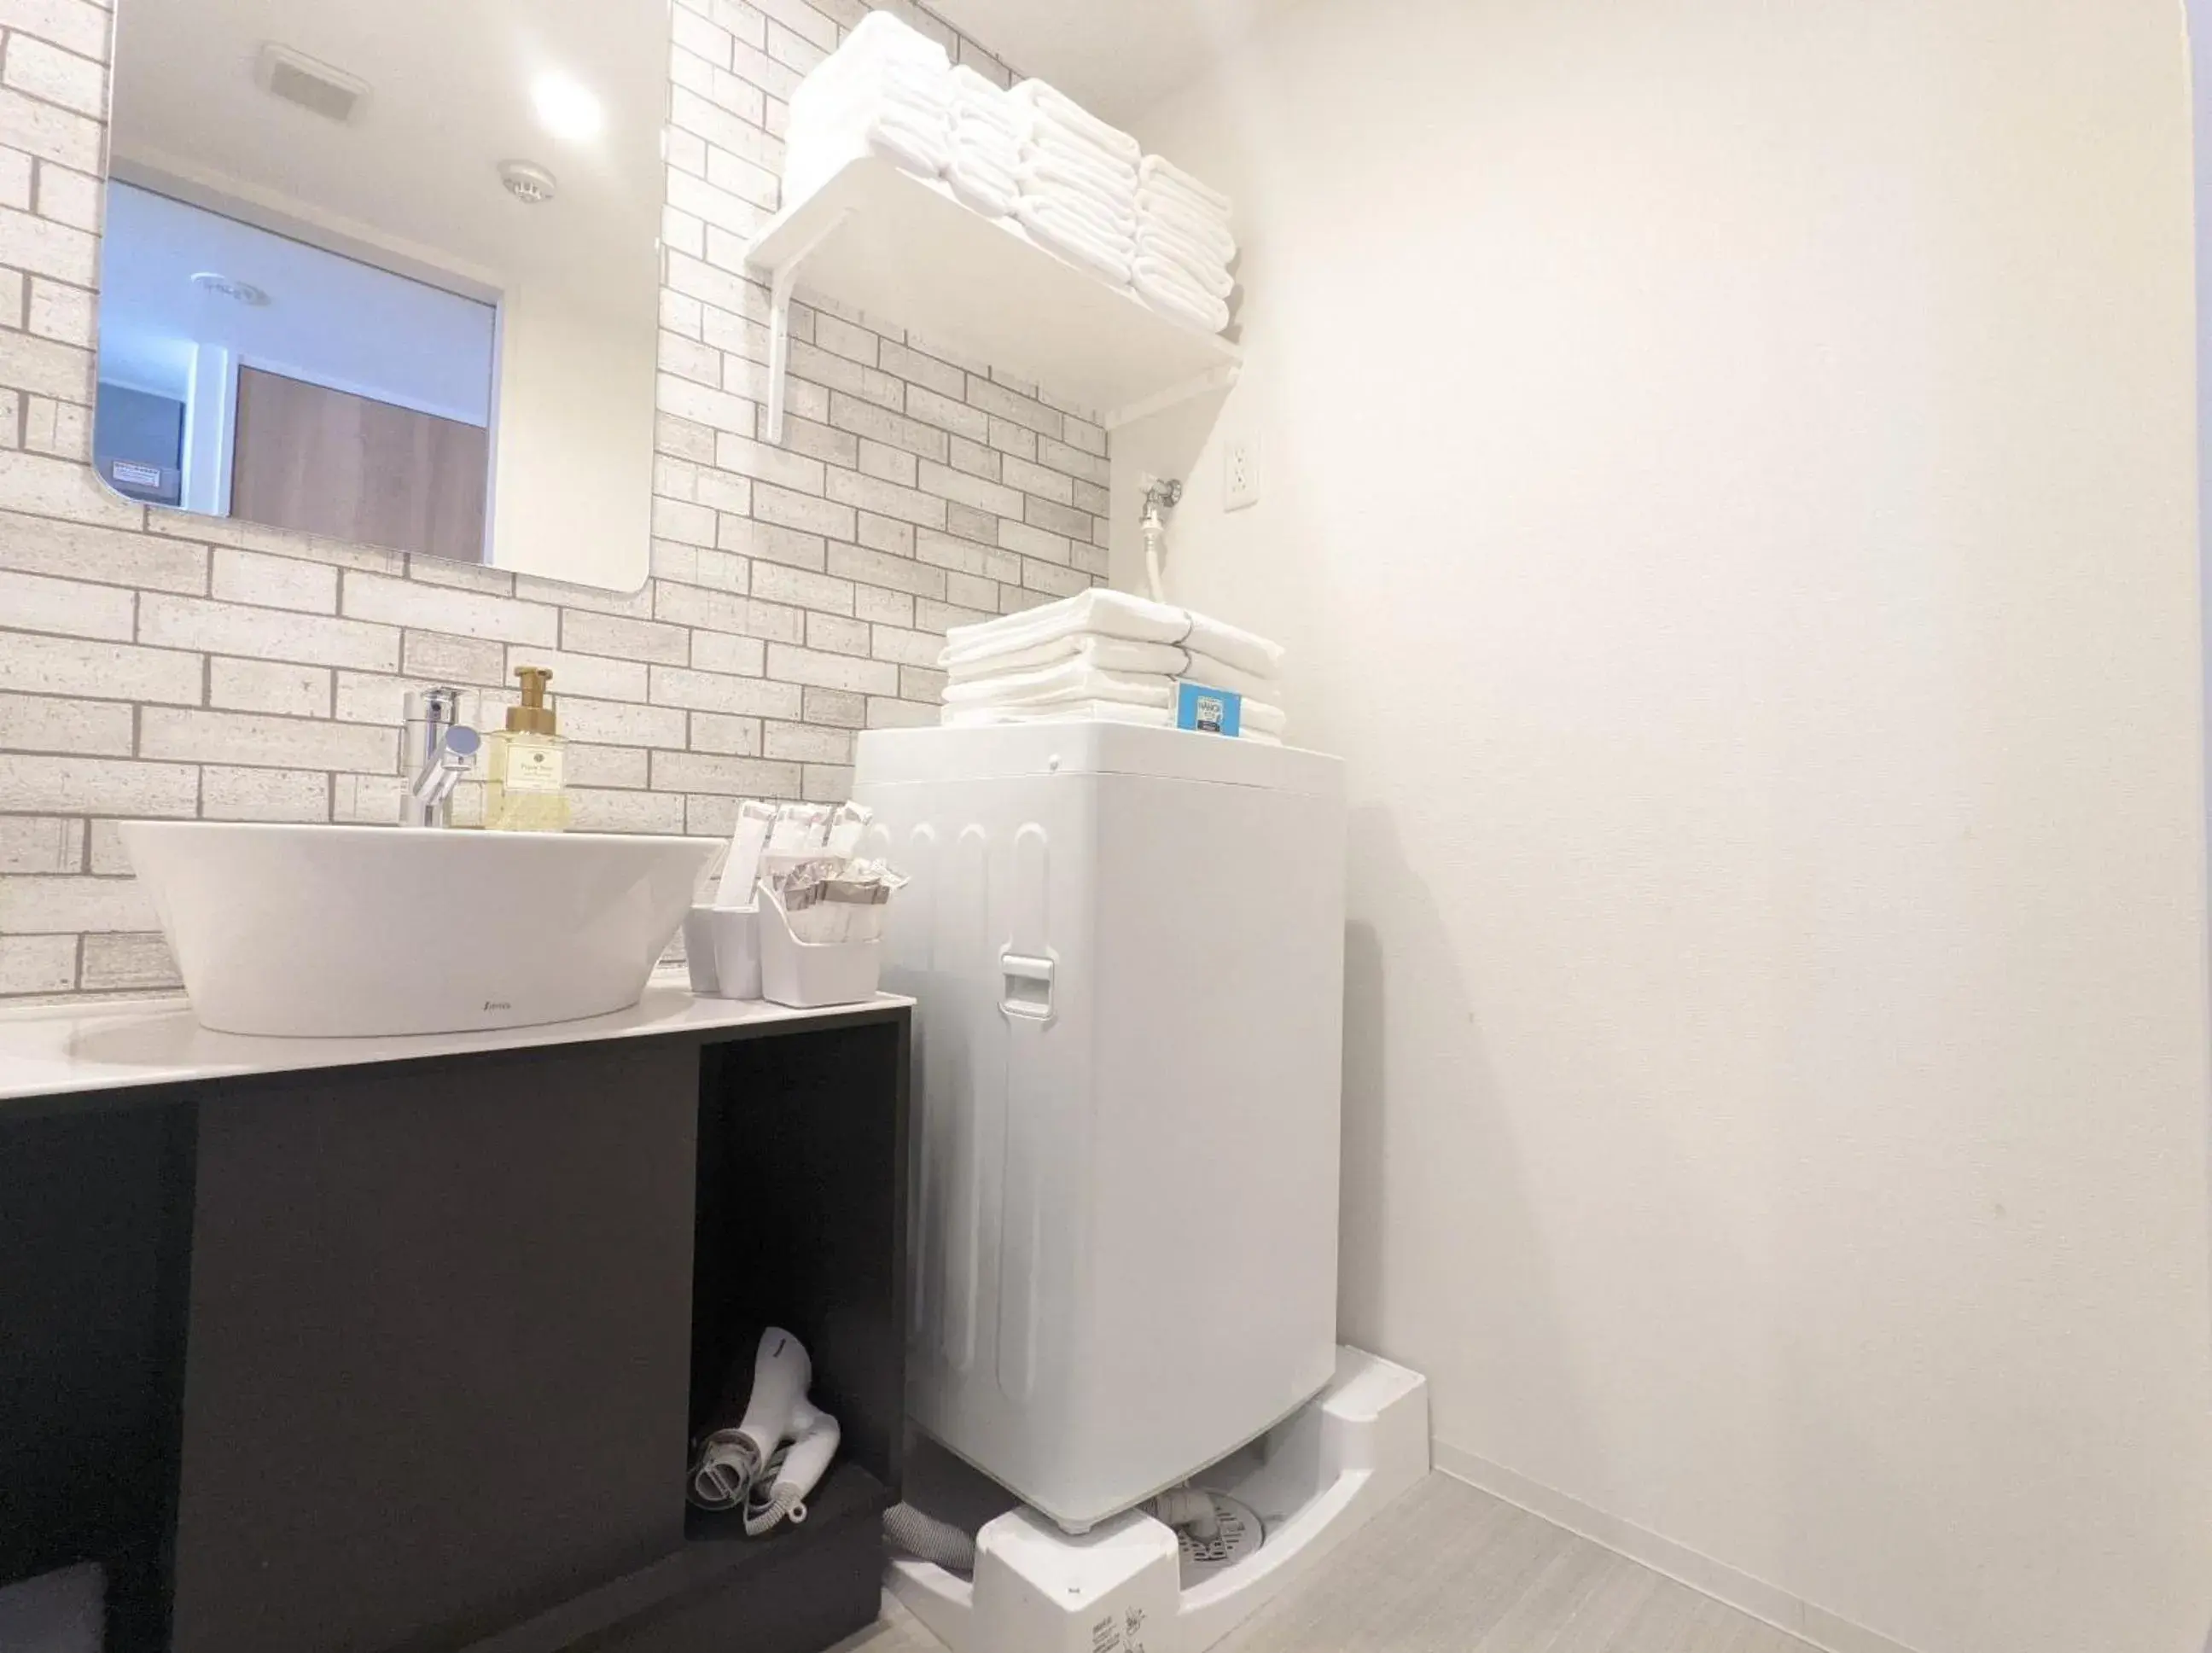 heating, Bathroom in ESLEAD HOTEL Namba South Ⅲ